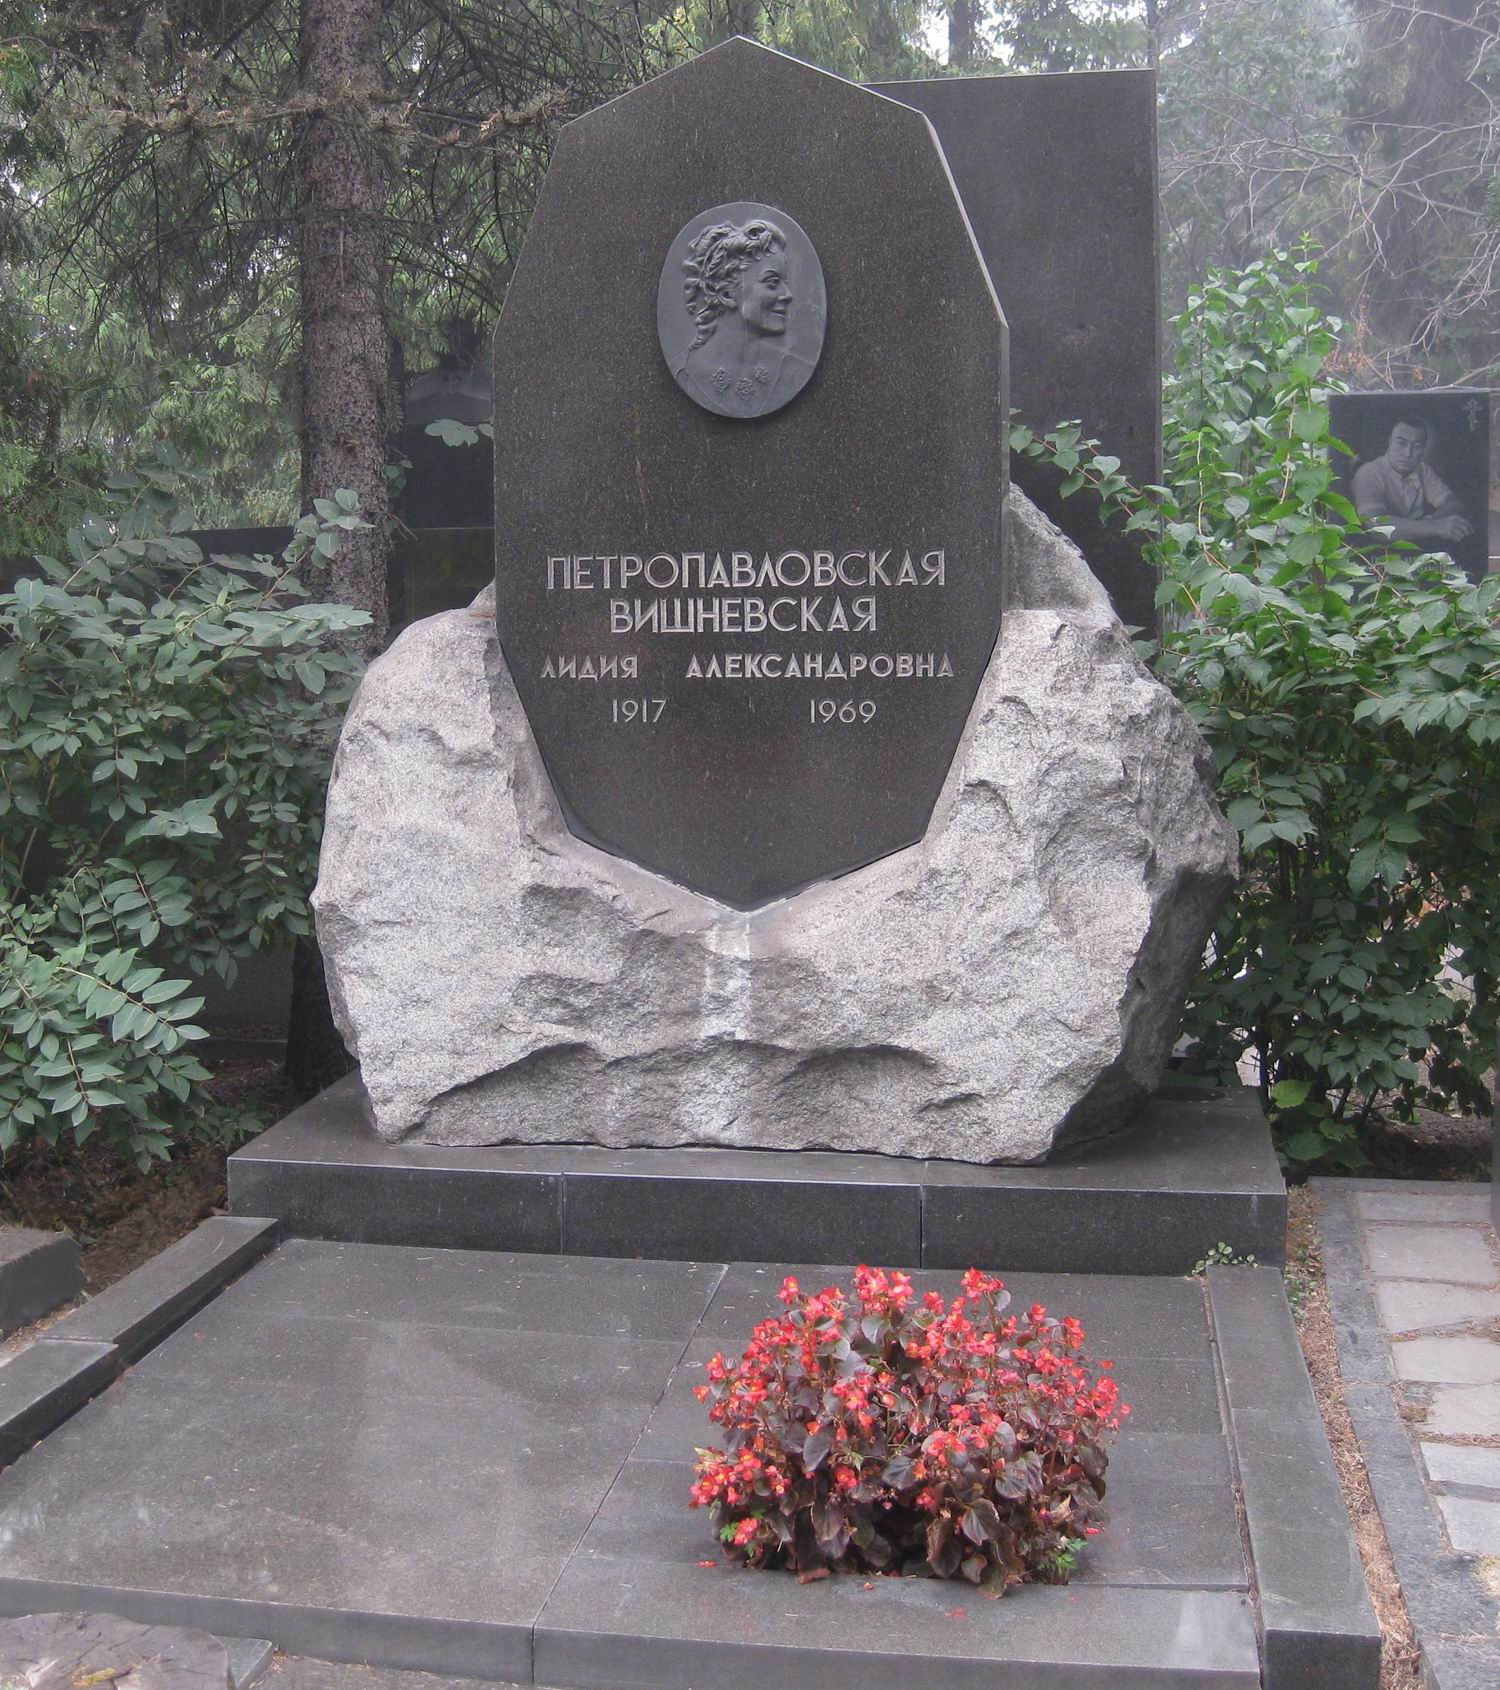 Памятник на могиле Петропавловской-Вишневской Л.А. (1917–1969), на Новодевичьем кладбище (7–1–16).